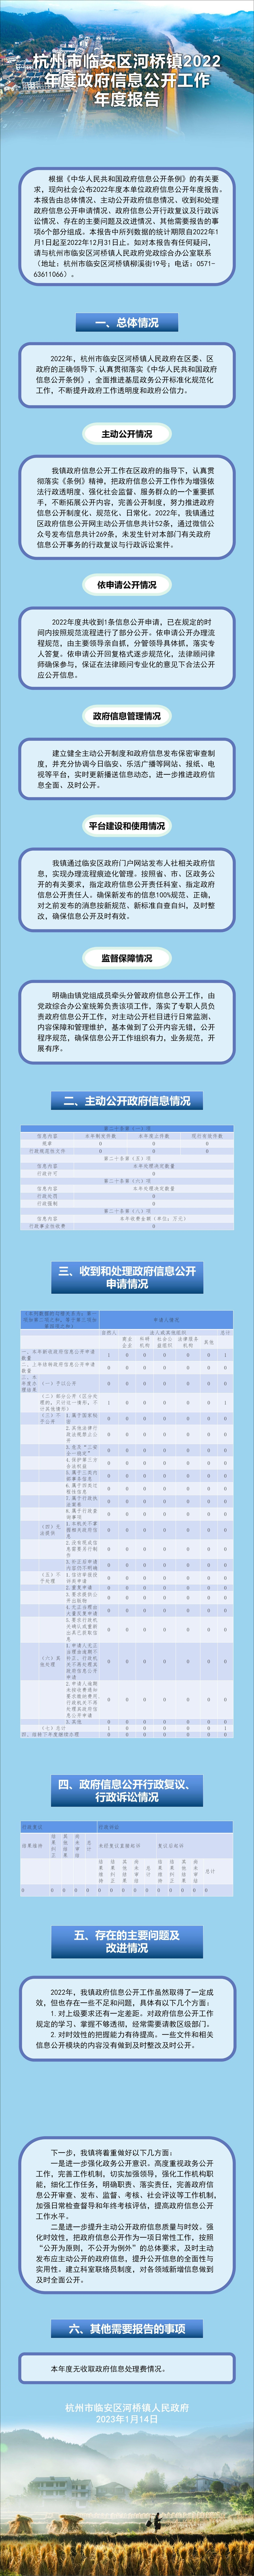 杭州市临安区河桥镇2022年度政府信息公开工作_01(1).jpg